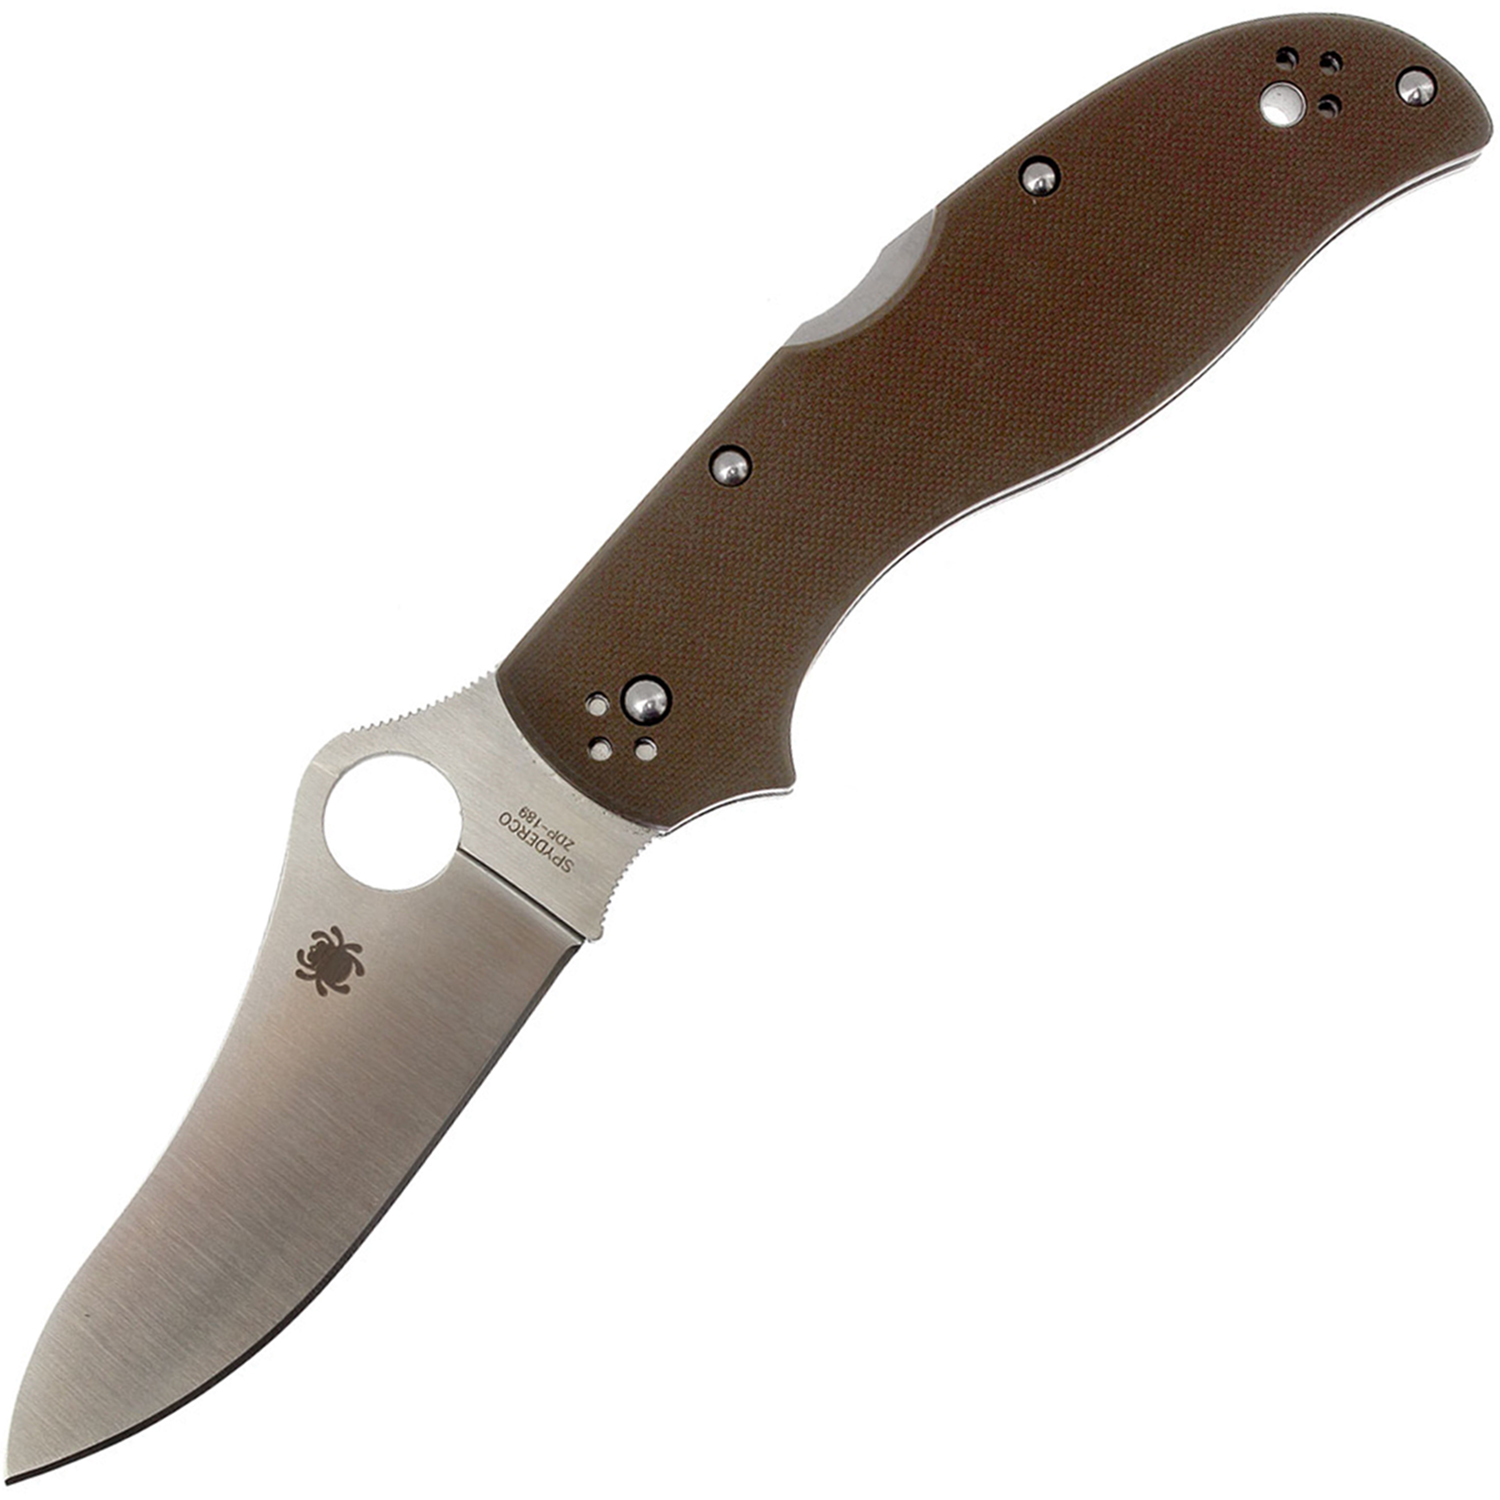 Нож складной Stretch 2 Spyderco 90GBNPE2, сталь ZDP-189 Satin Plain, рукоять стеклотекстолит G10, коричневый - фото 1